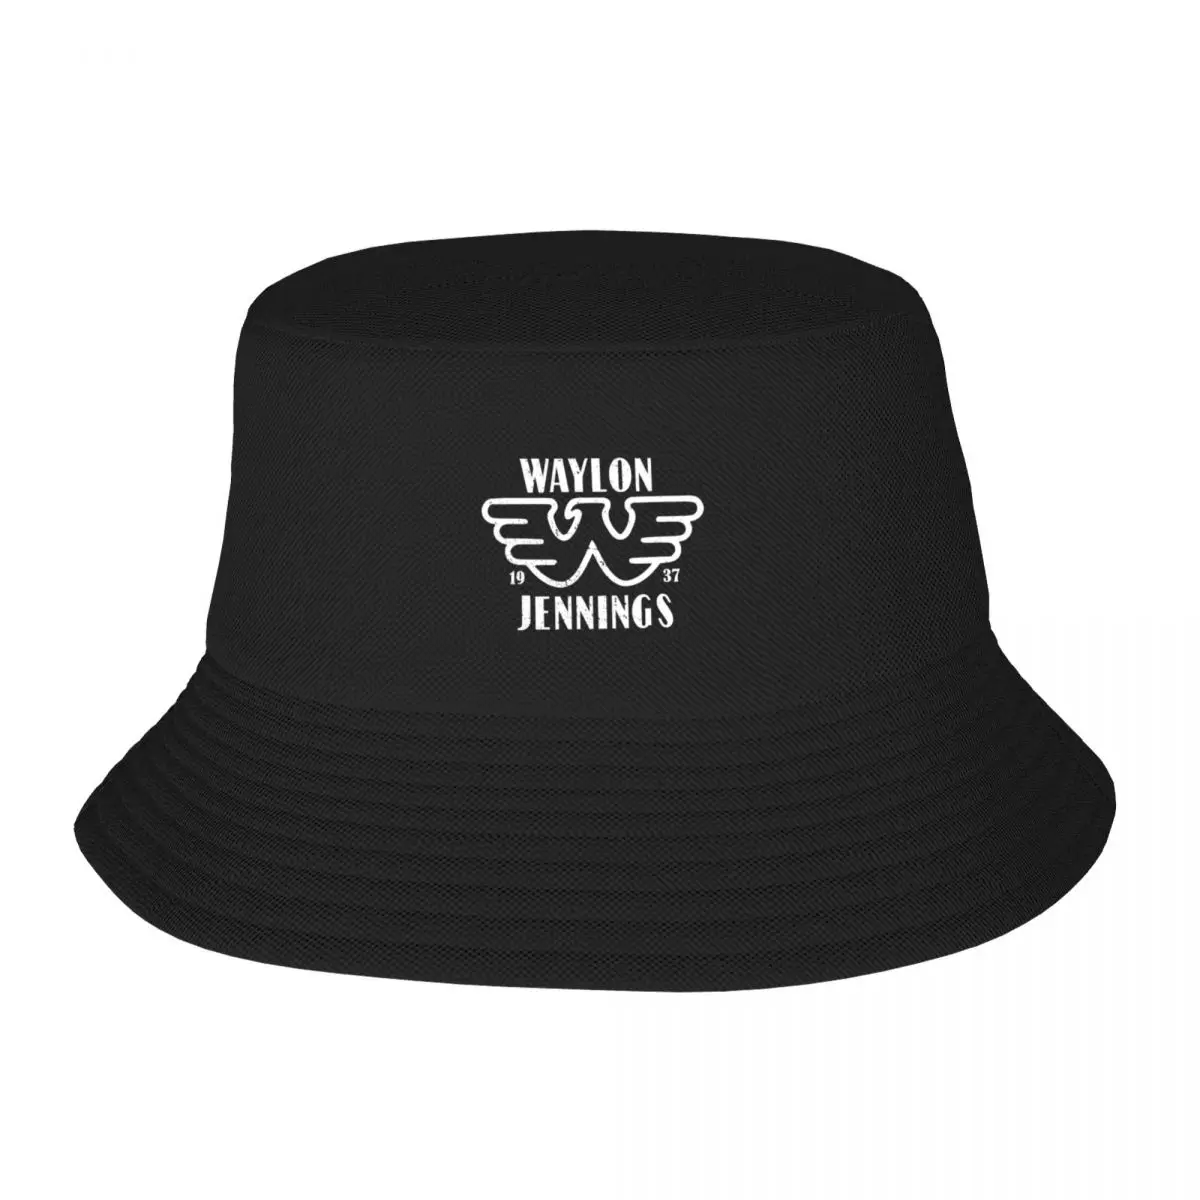 Новая копия широкополой шляпы Waylon Jennings Outlaw, модные шляпы для пляжного гольфа, новинки в шляпах для женщин и мужчин